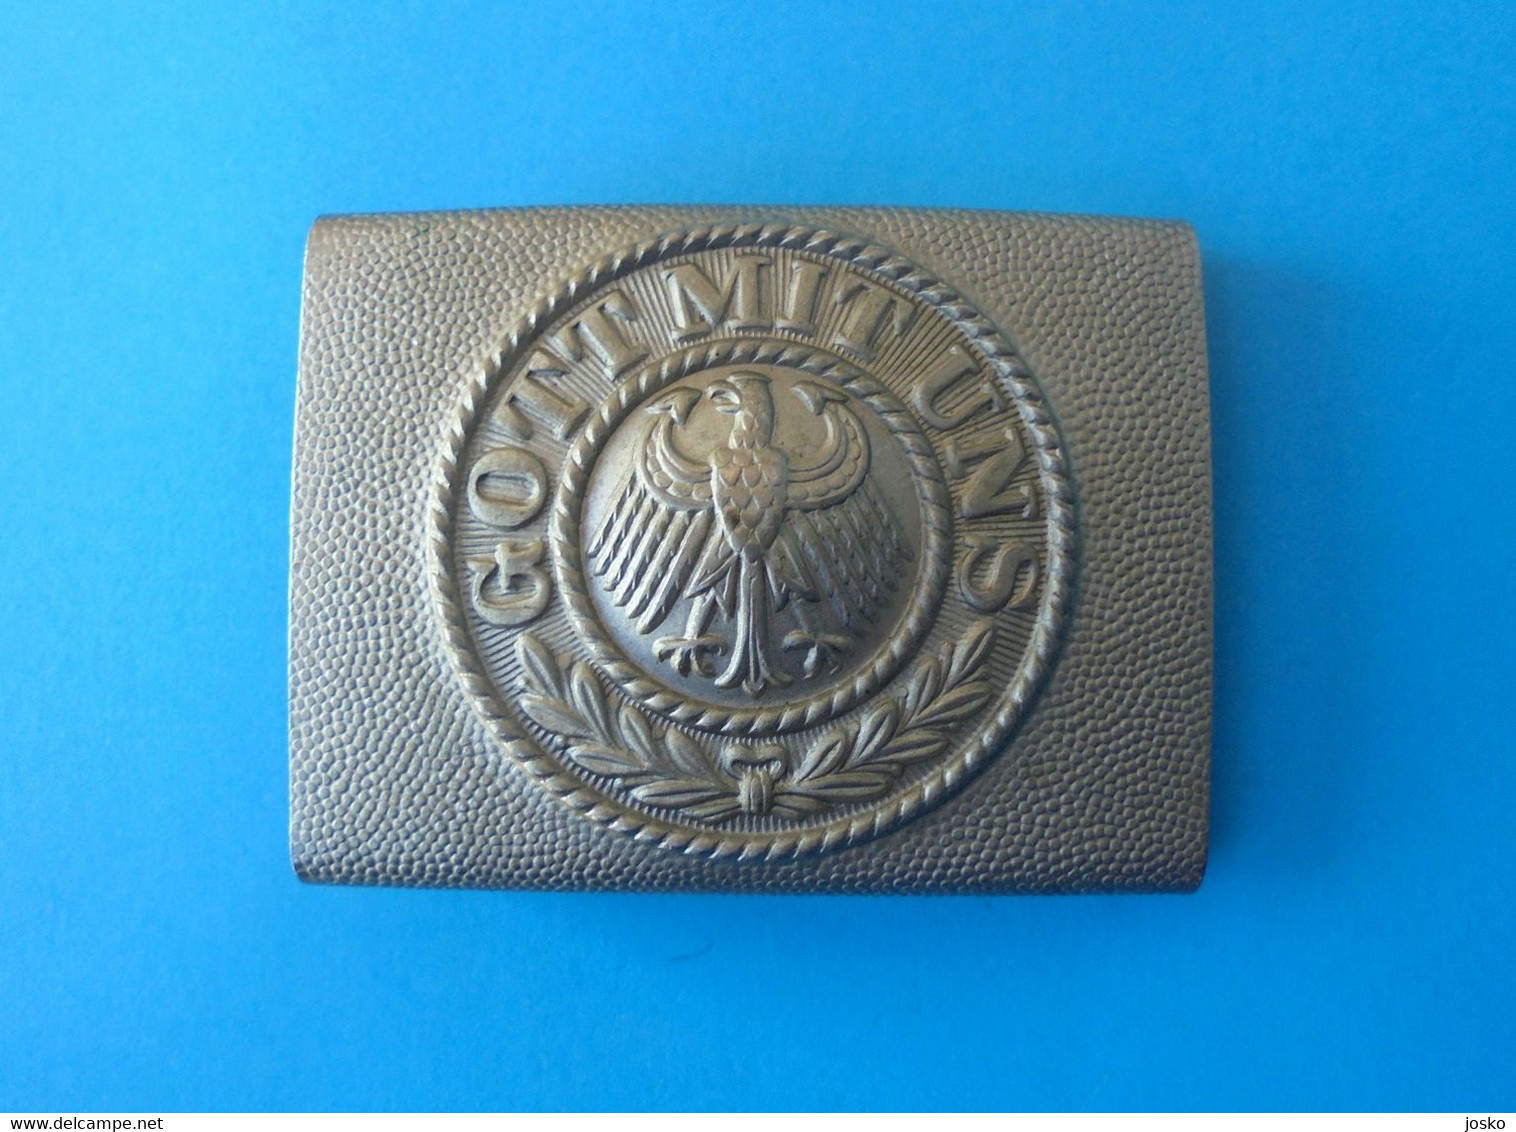 GOTT MIT UNS - German Army Reichswehr Metal Belt Buckle With Eagle (adler) * Deutschland Armee Boucle De Ceinture - 1939-45